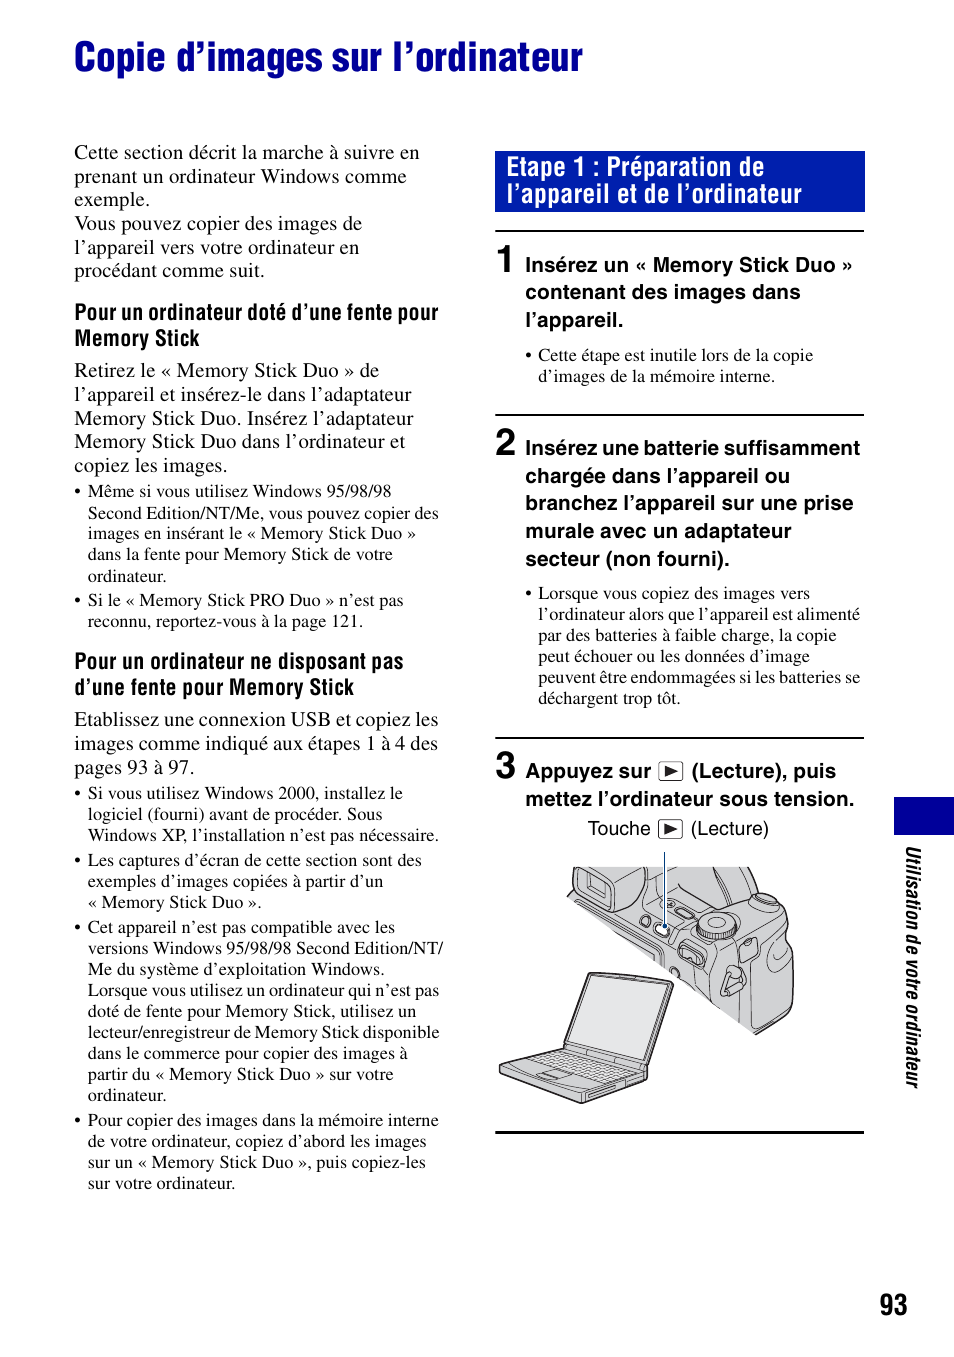 Copie d’images sur l’ordinateur | Sony DSC-H7 Manuel d'utilisation | Page 93 / 140